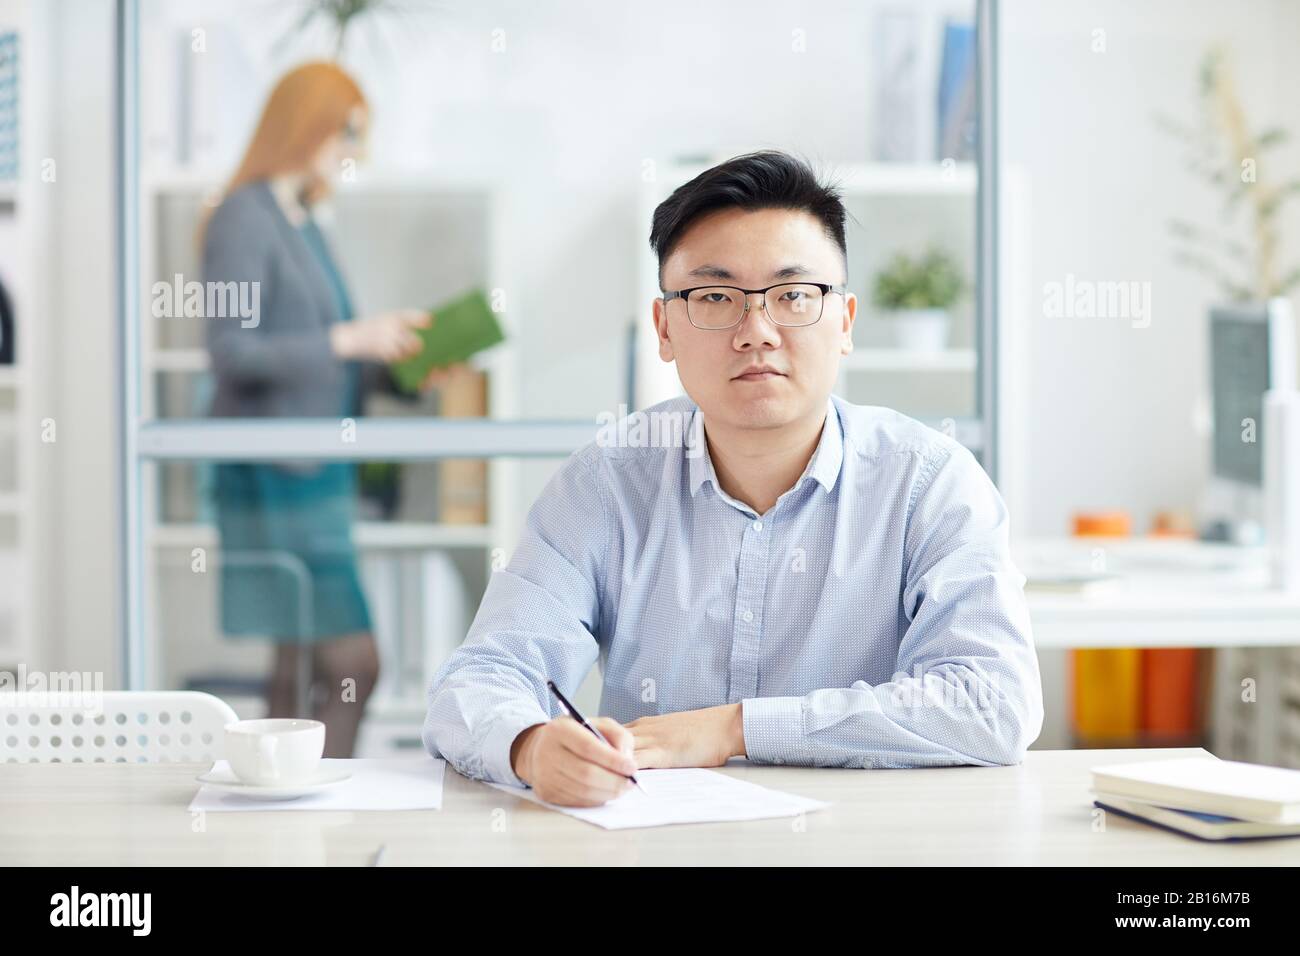 Retrato de un joven hombre de negocios asiático con gafas y mirando la cámara mientras se posaba en el lugar de trabajo en el armario de la oficina, espacio para copias Foto de stock